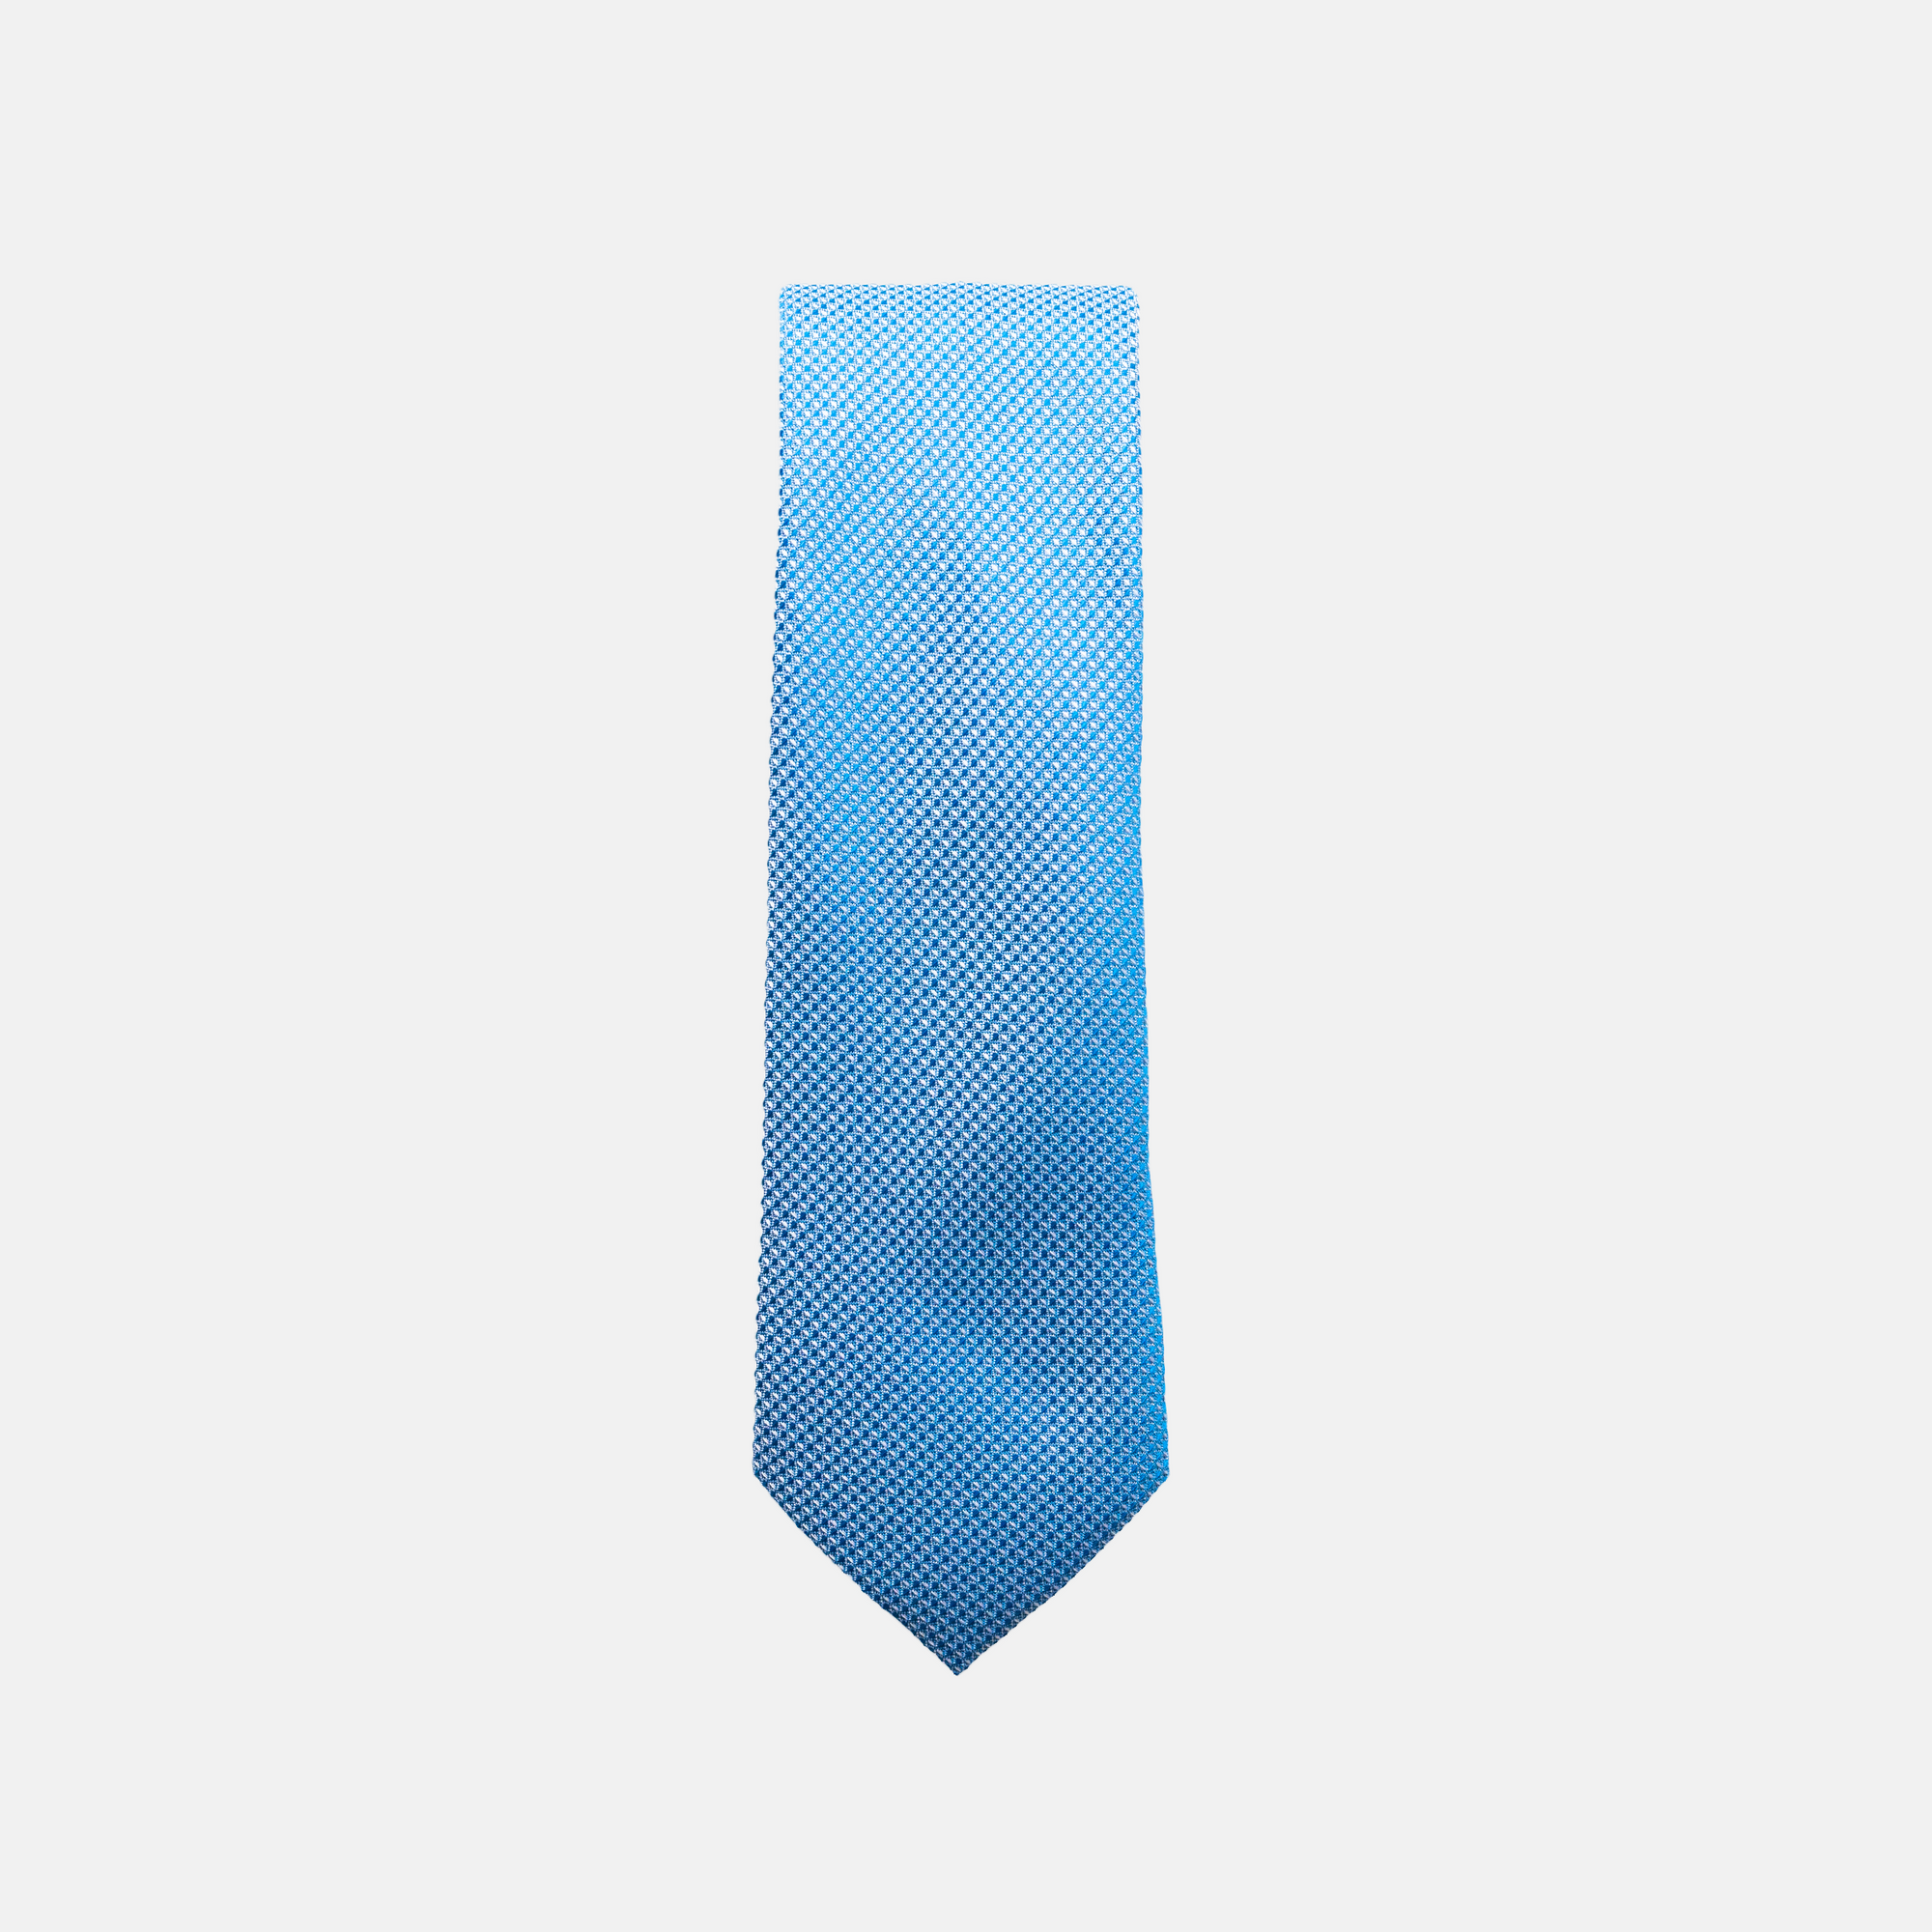 PENN - Men's Tie